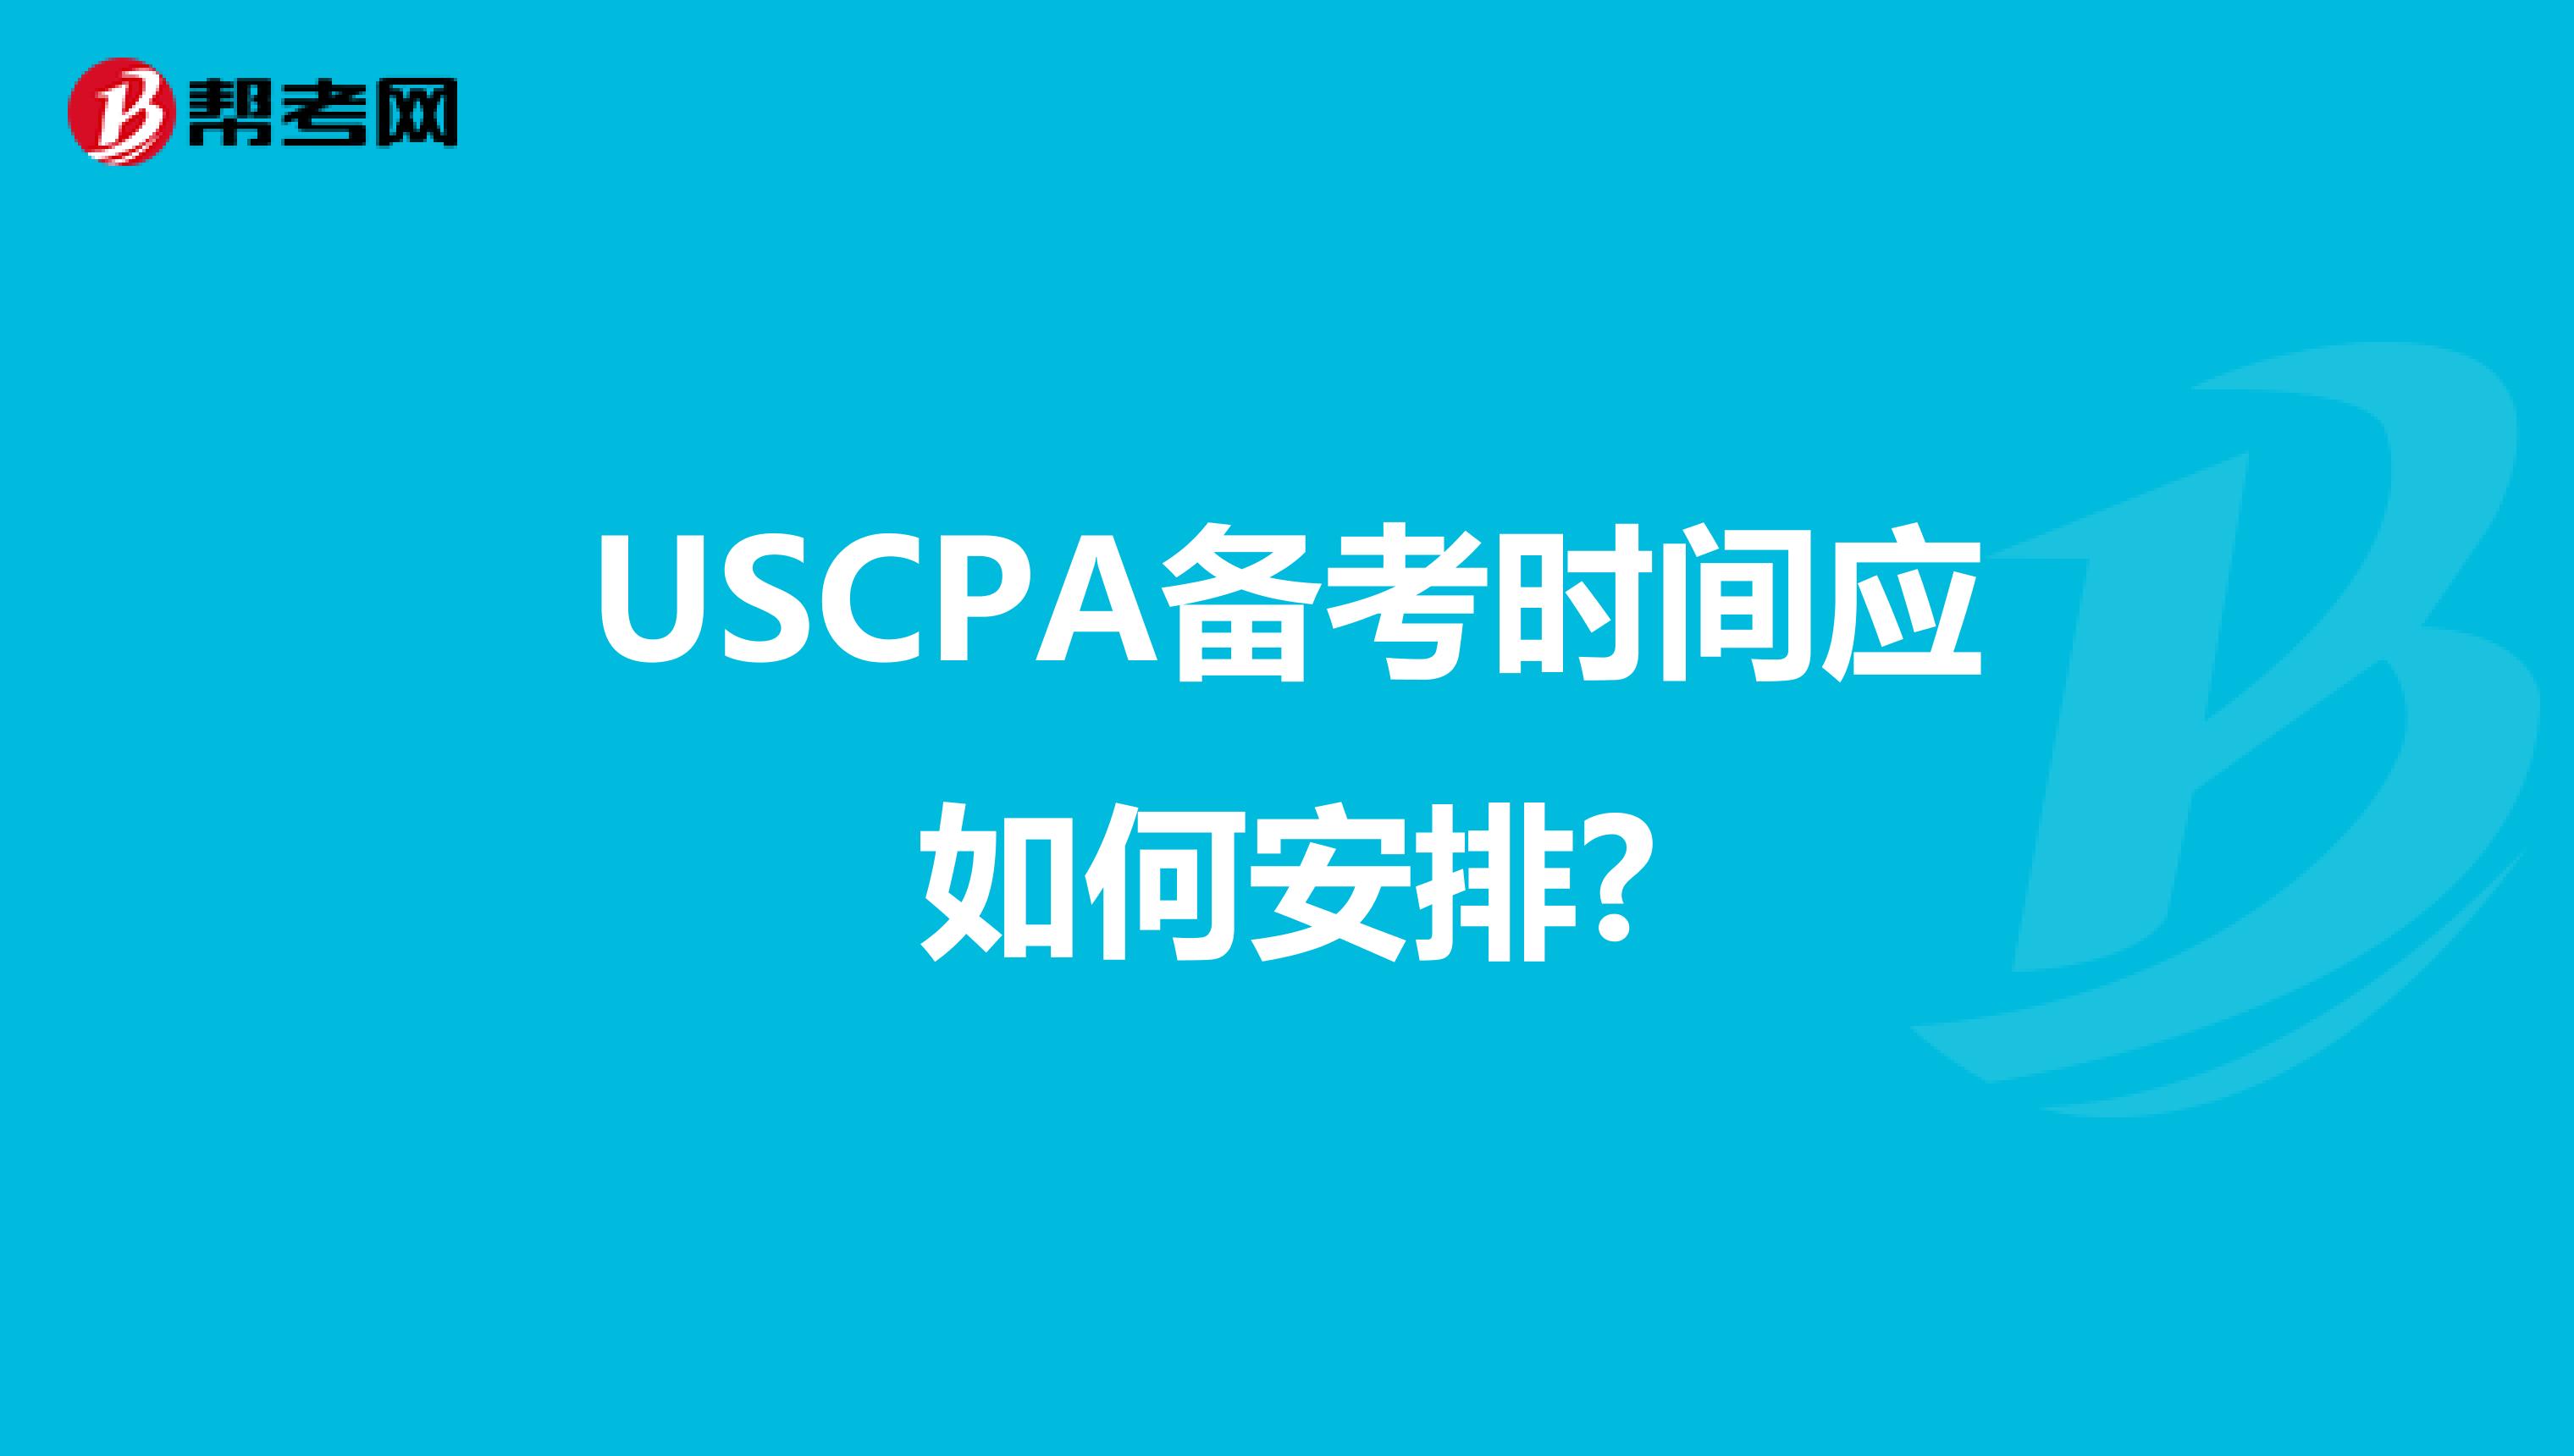 USCPA备考时间应如何安排?